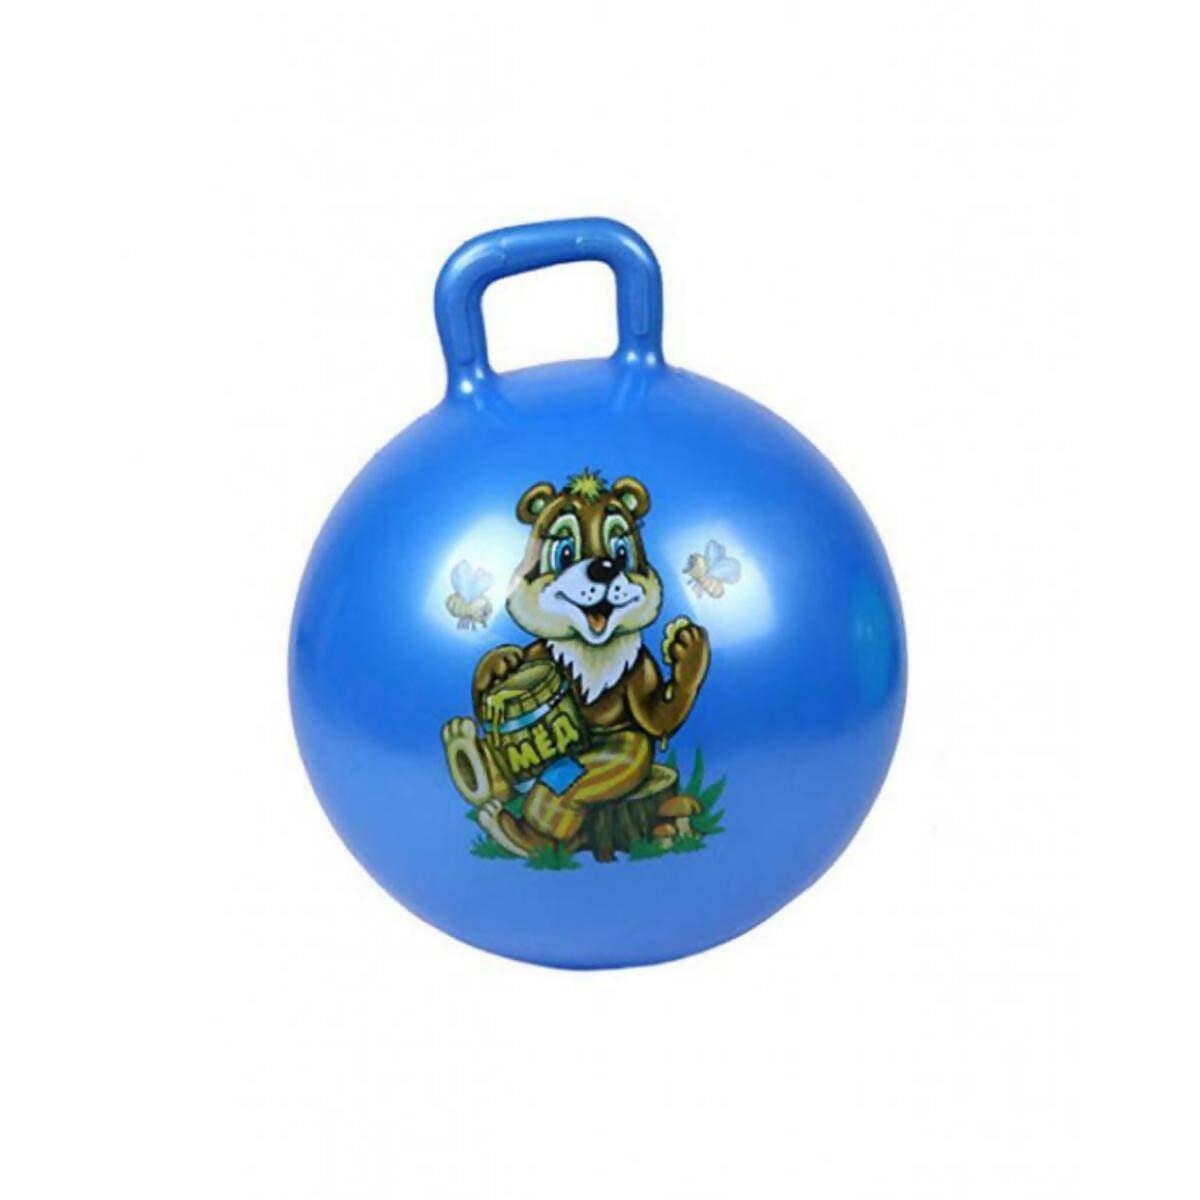 Skippy Ball For Kids - Blue - ValueBox